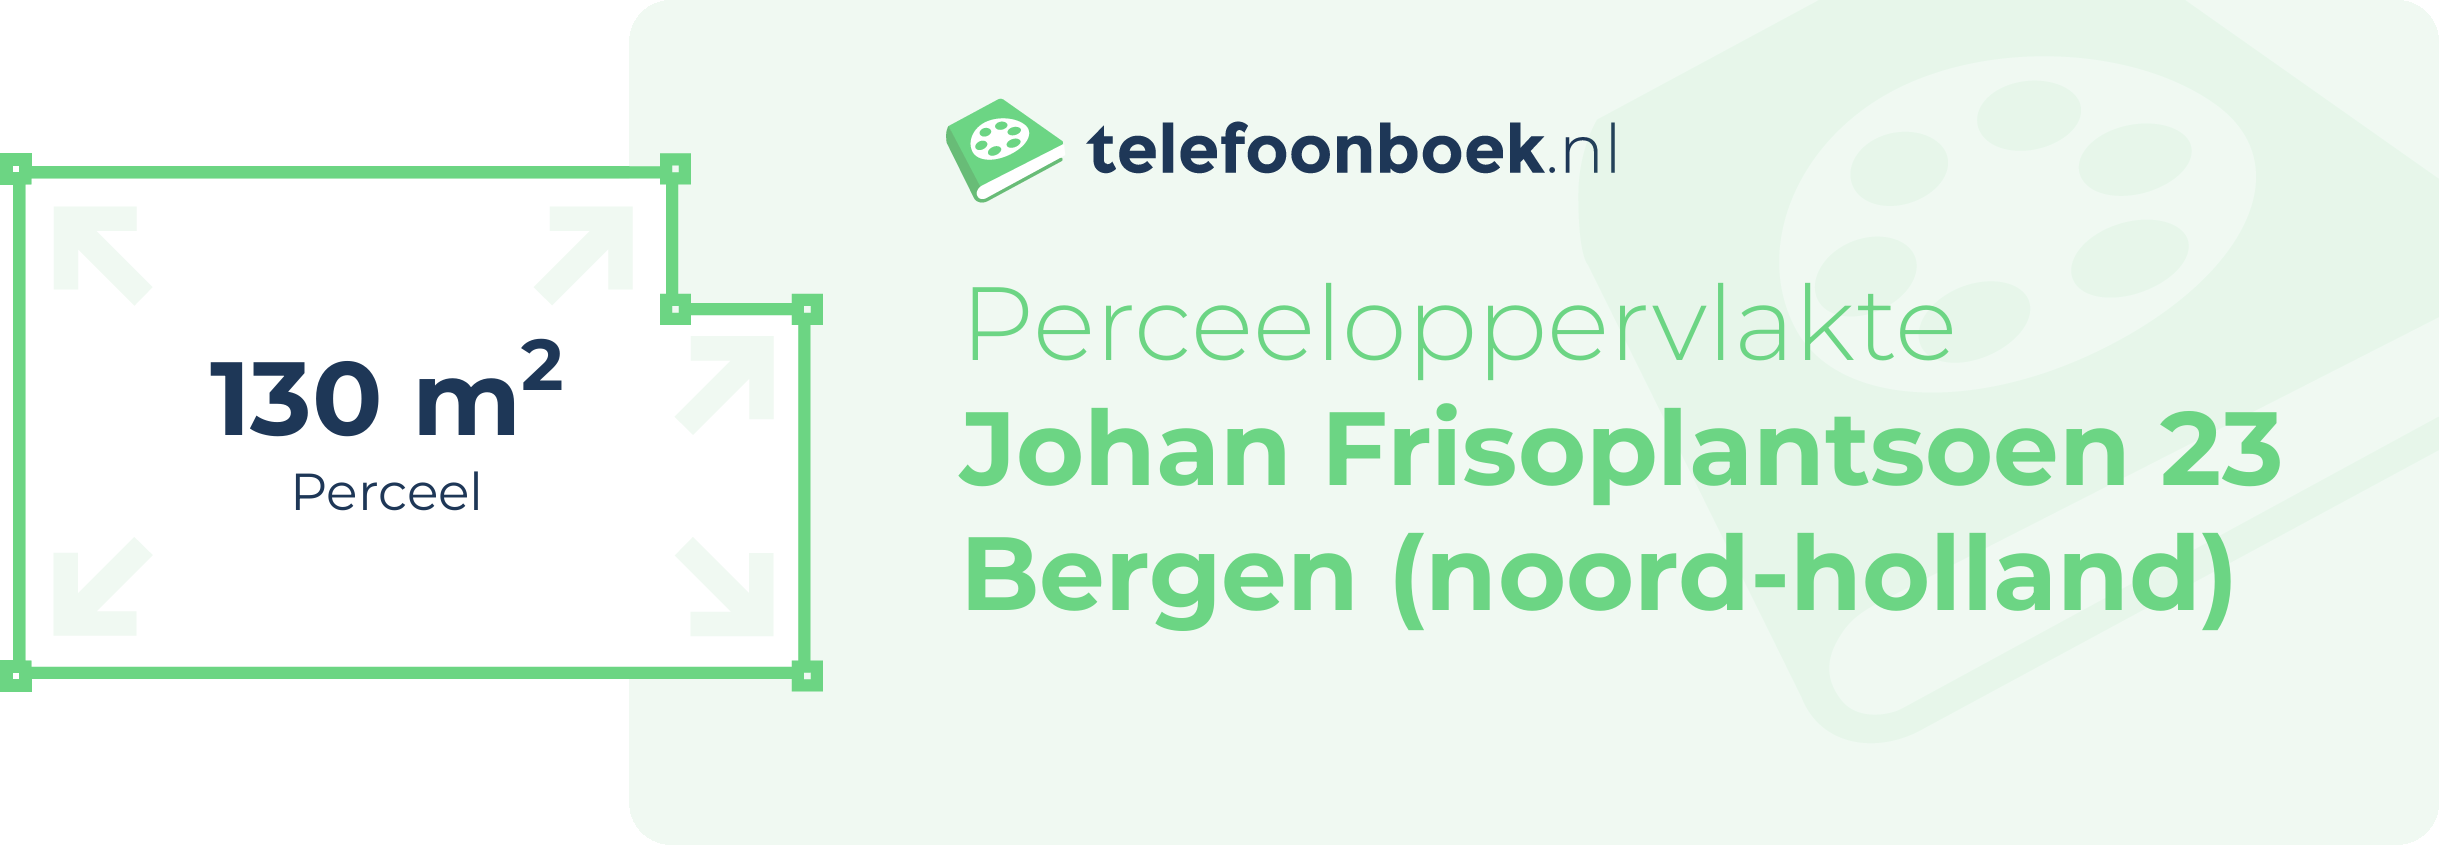 Perceeloppervlakte Johan Frisoplantsoen 23 Bergen (Noord-Holland)